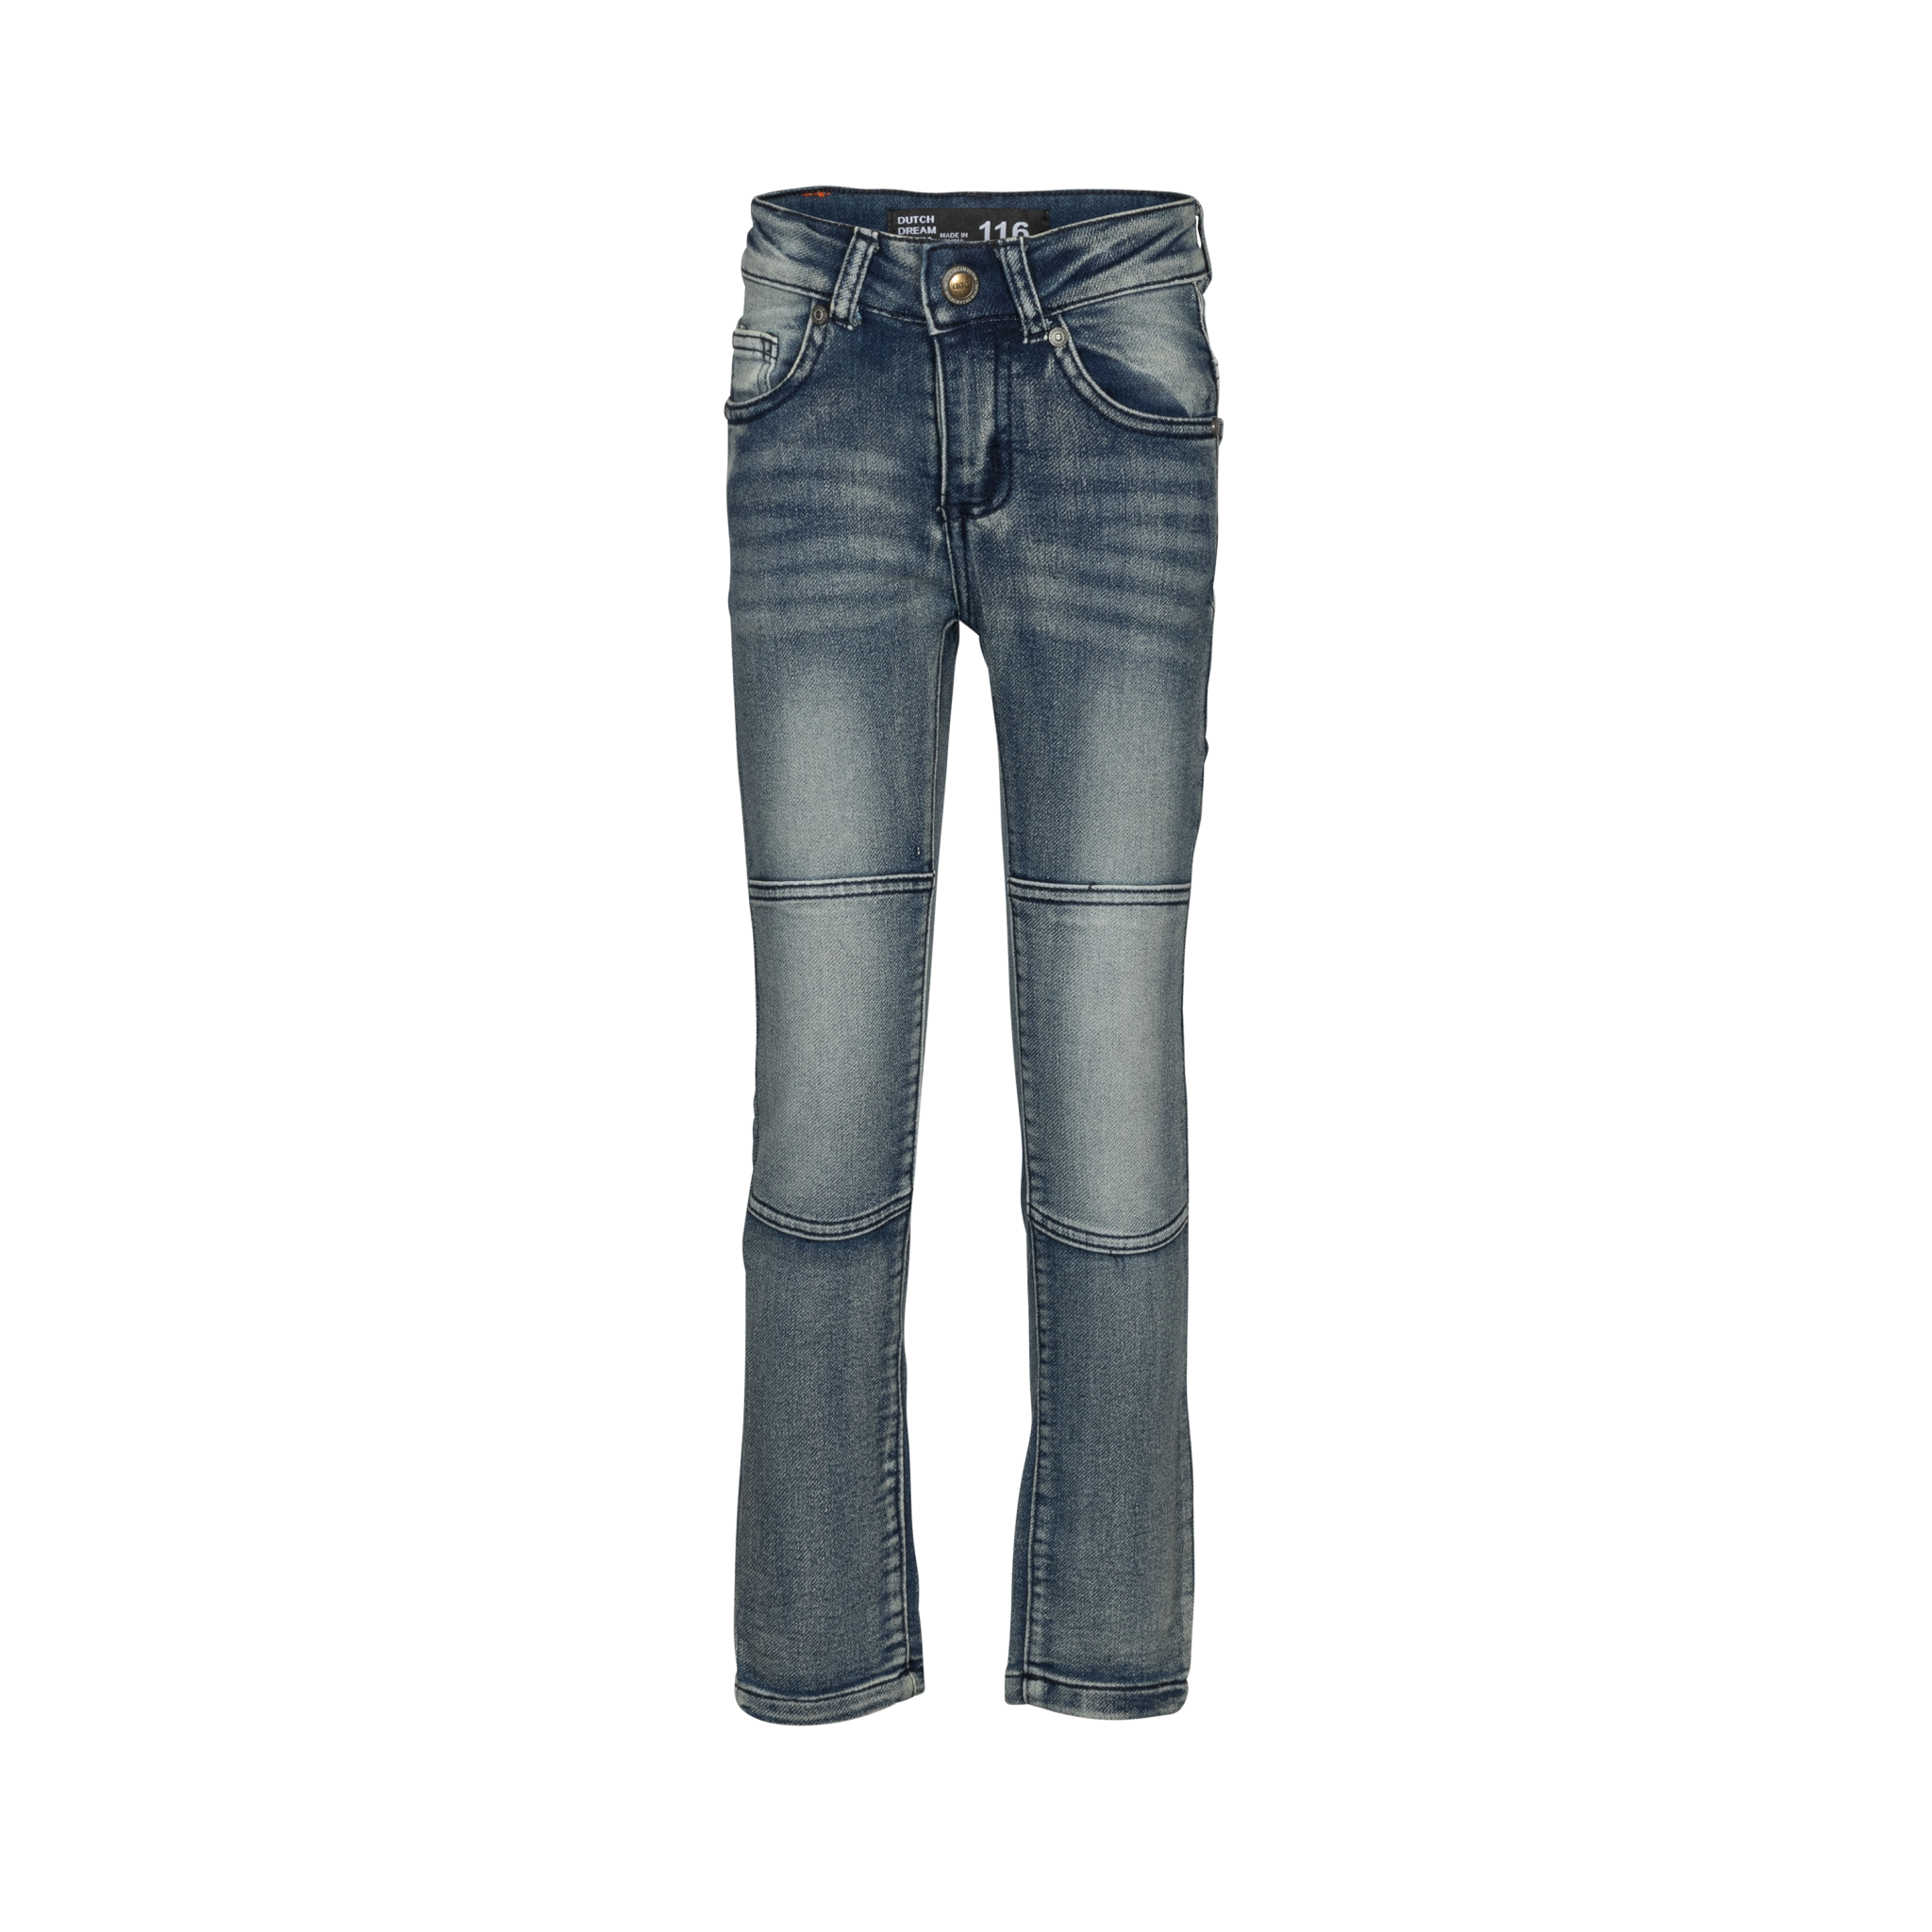 Afbeelding van Dutch Dream Denim Jongens jeans juu extra slim fit